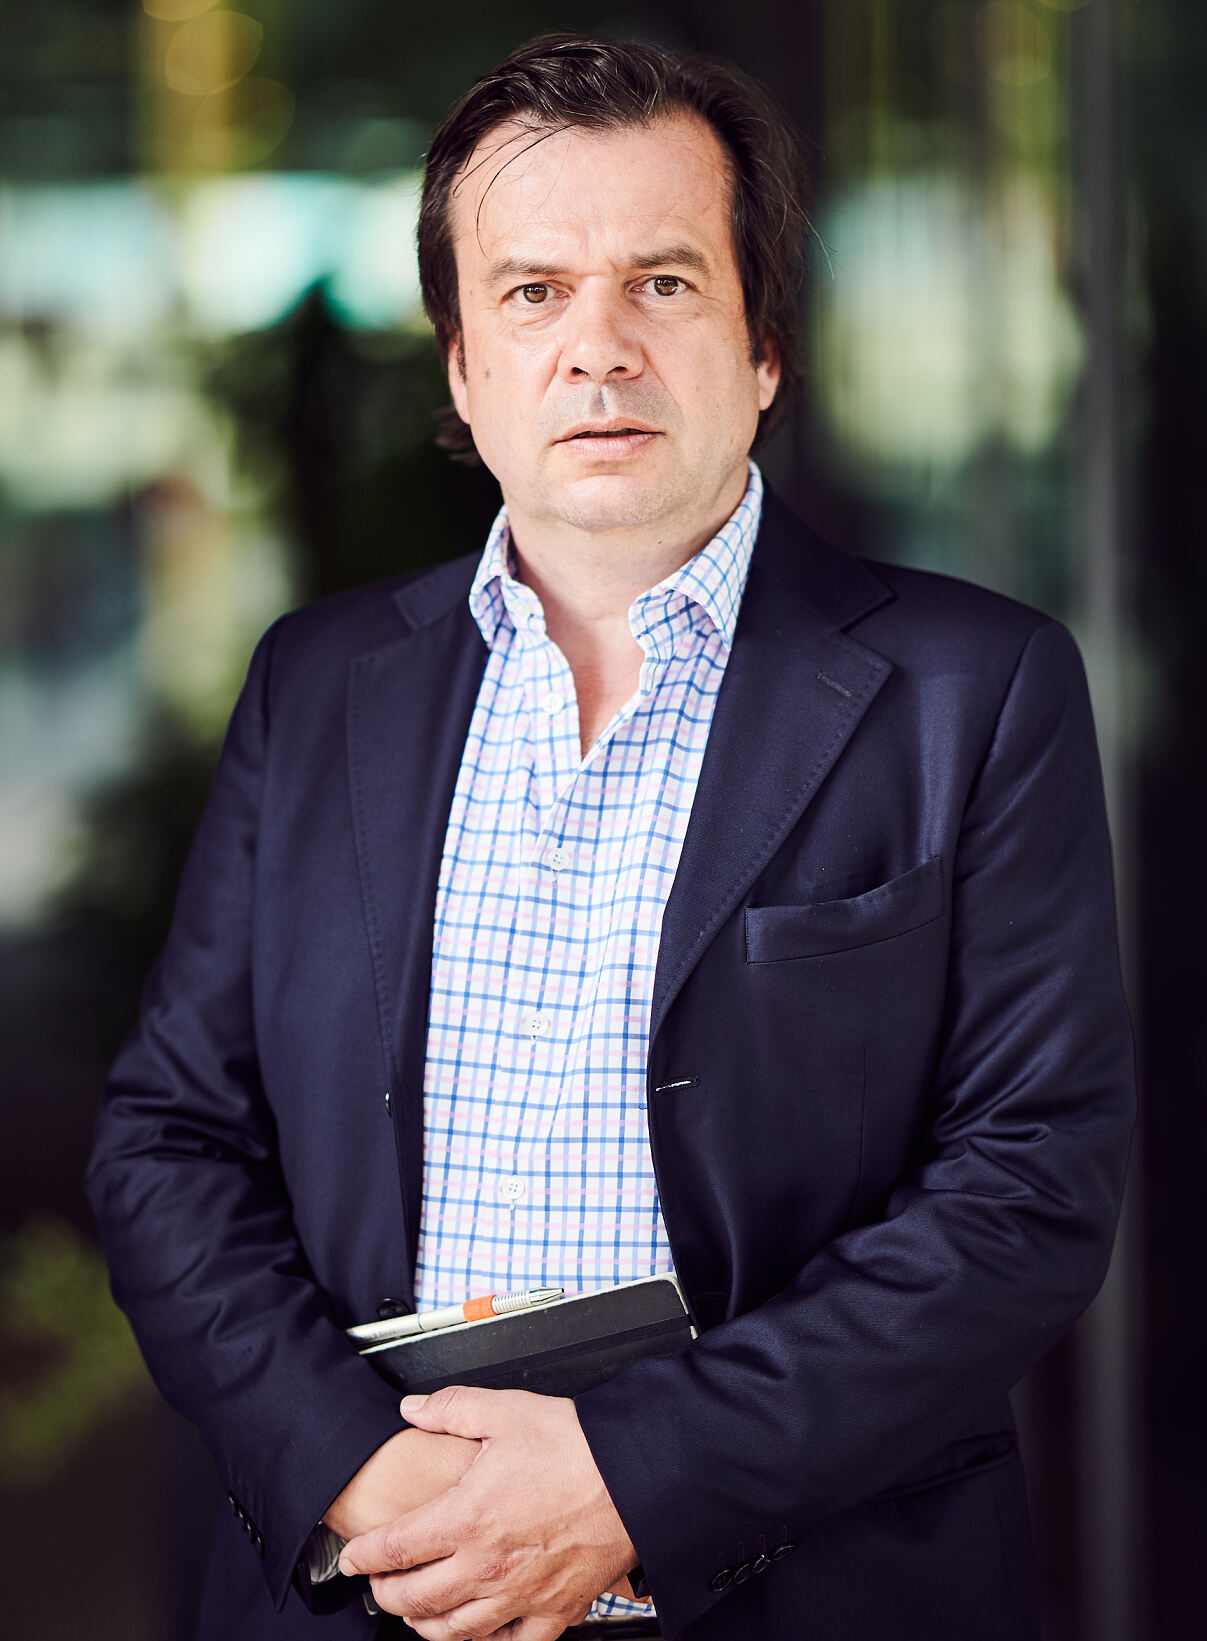 aehre-Chefredakteur Matthias Flödl: „aehre steht für hochqualitativen, konstruktiven Journalismus rund um ESG-Themen“